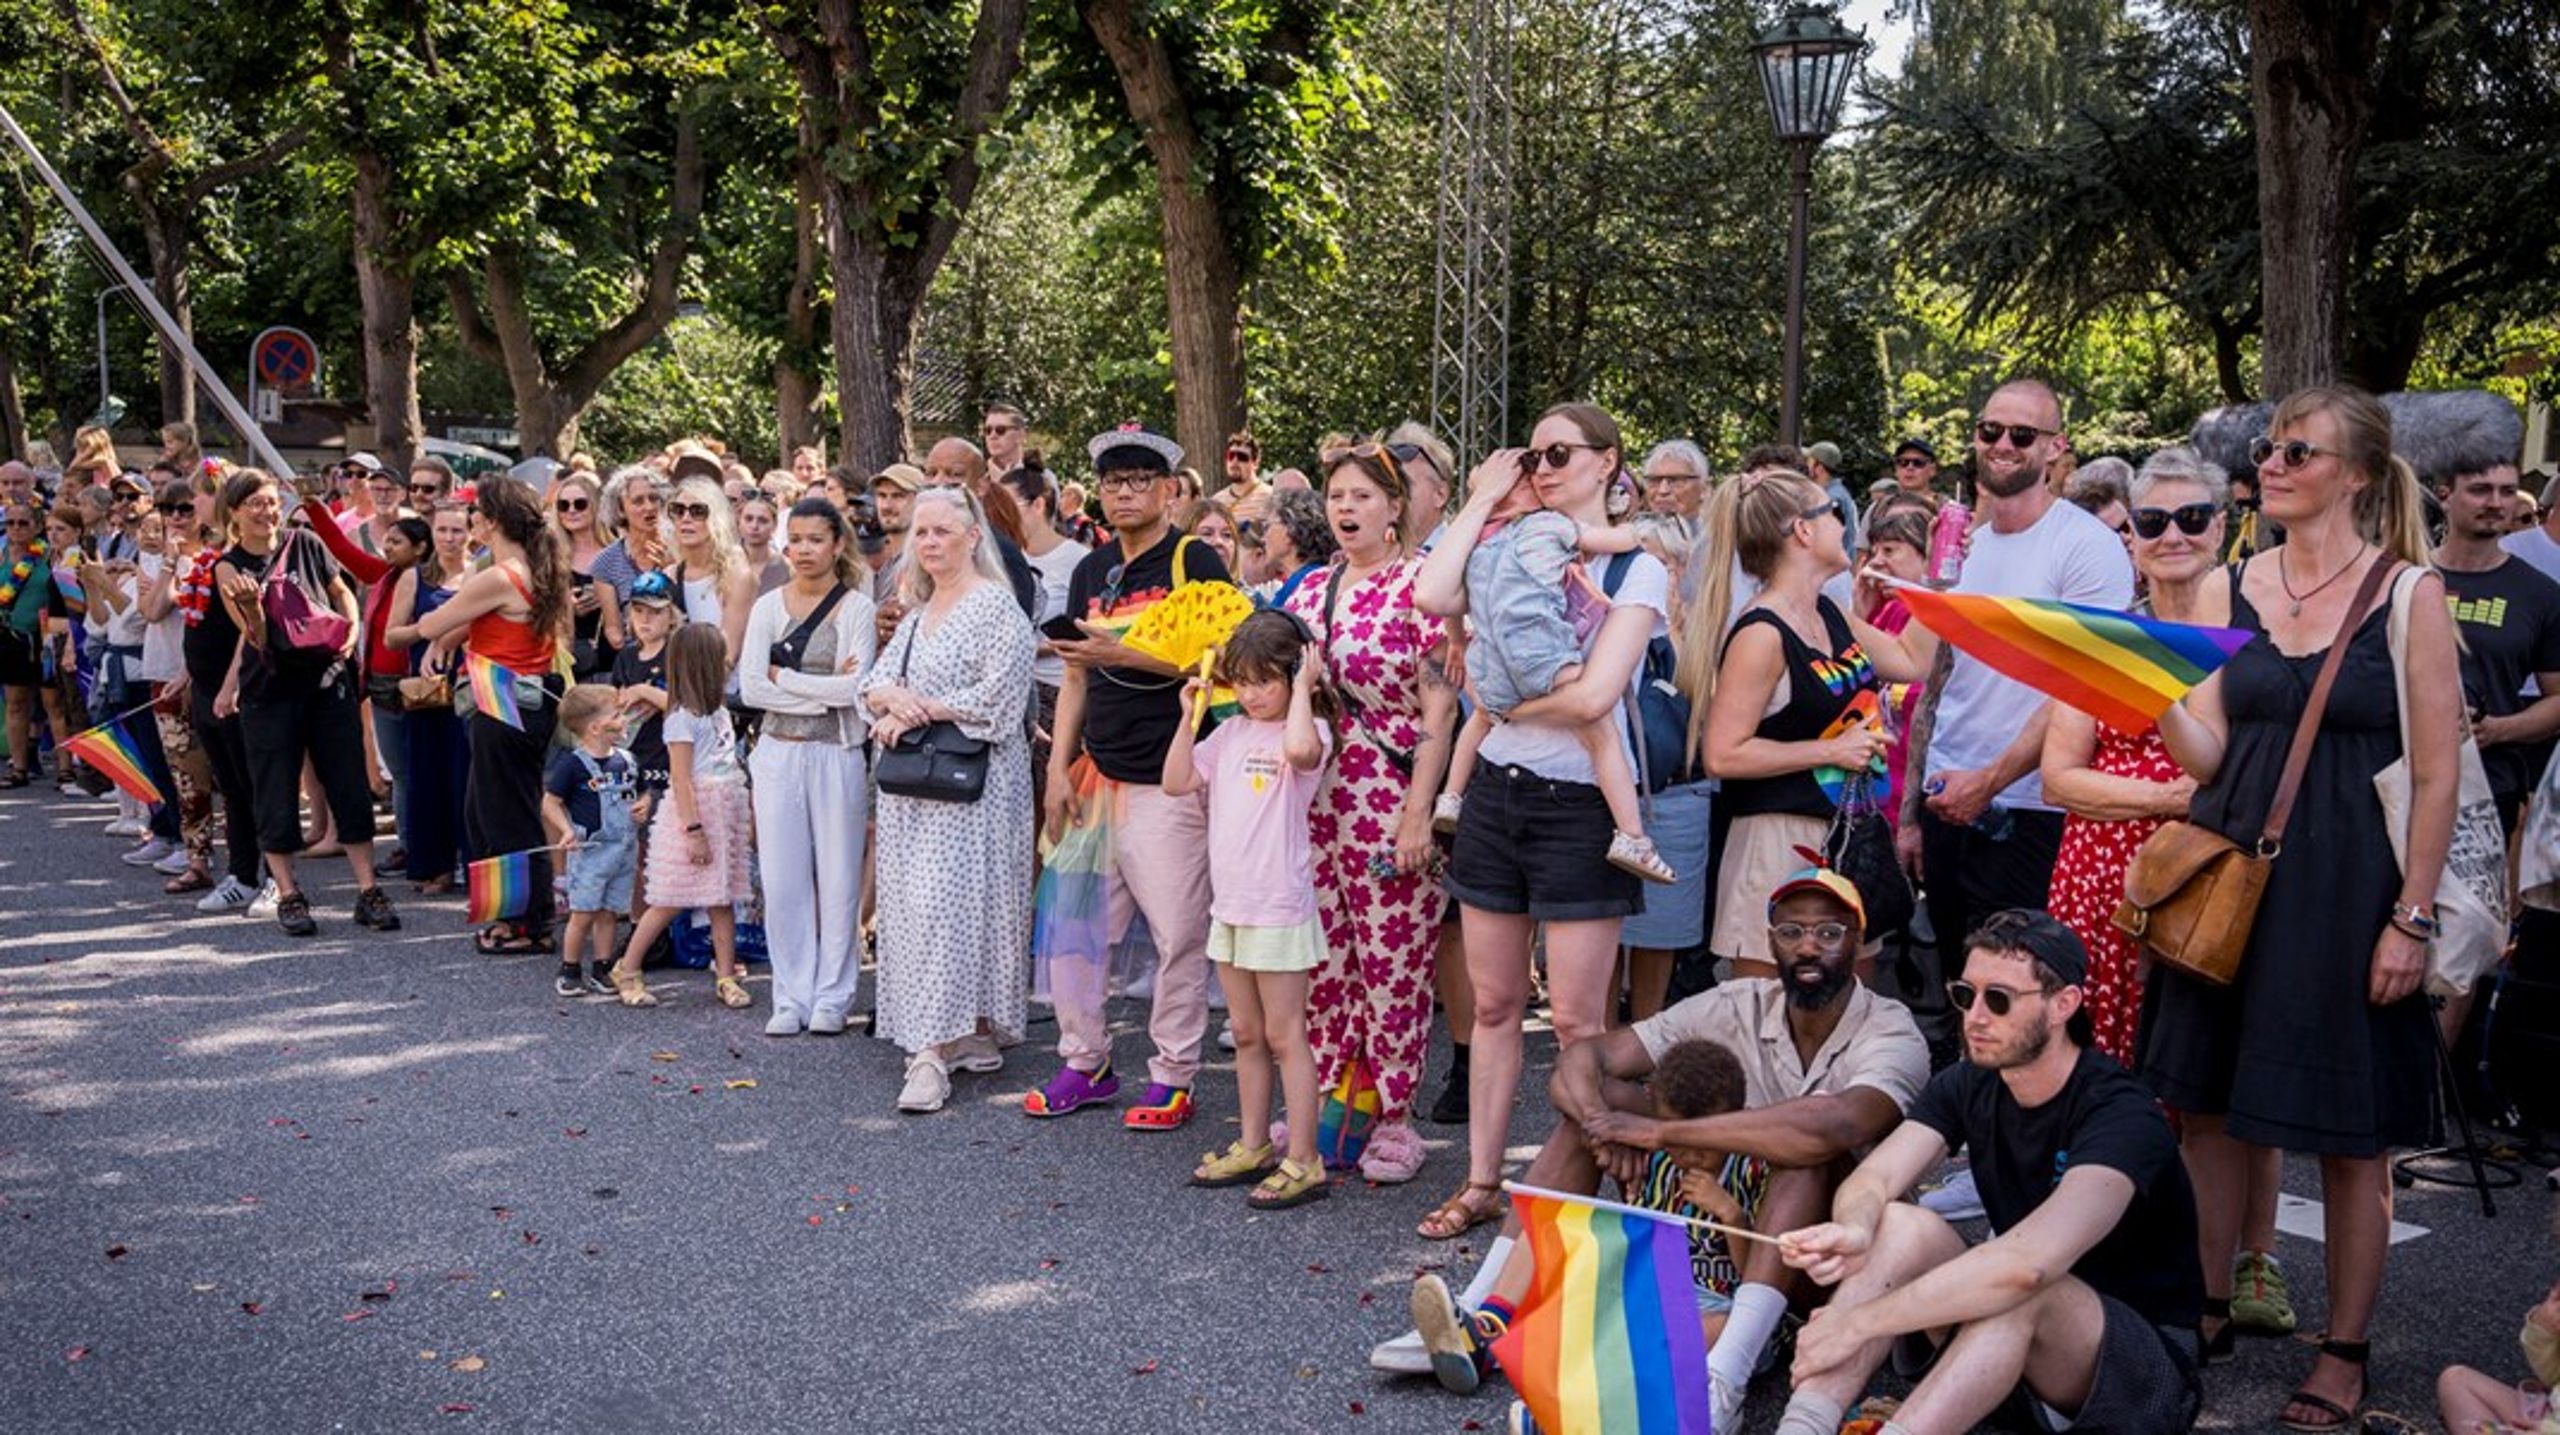 Den afgående kommunikationschef stopper kort efter at Copenhagen Pride blev fanget i en shitstorm i forbindelse med, at organisationen havde kommunikeret, at deres samarbejdspartnere skulle give "tilfredsstillende svar" om interesser og aktiviteter i Israel og Palæstina.